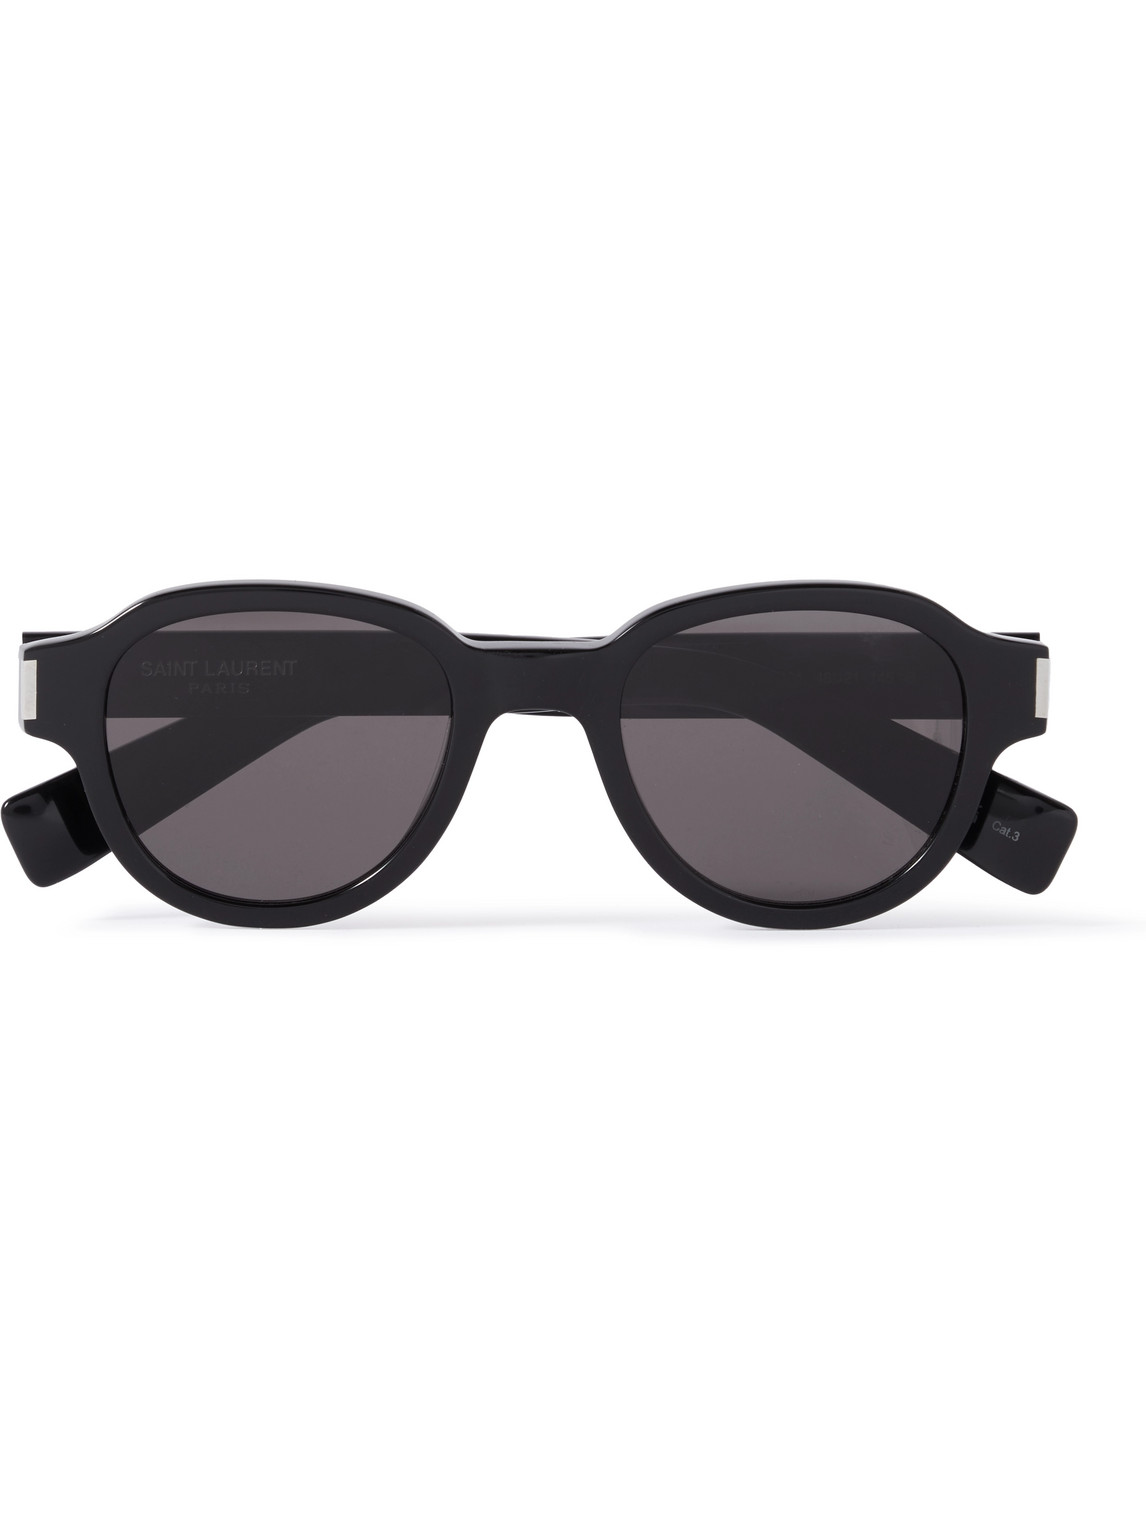 Saint Laurent Round Acetate Sunglasses In Black